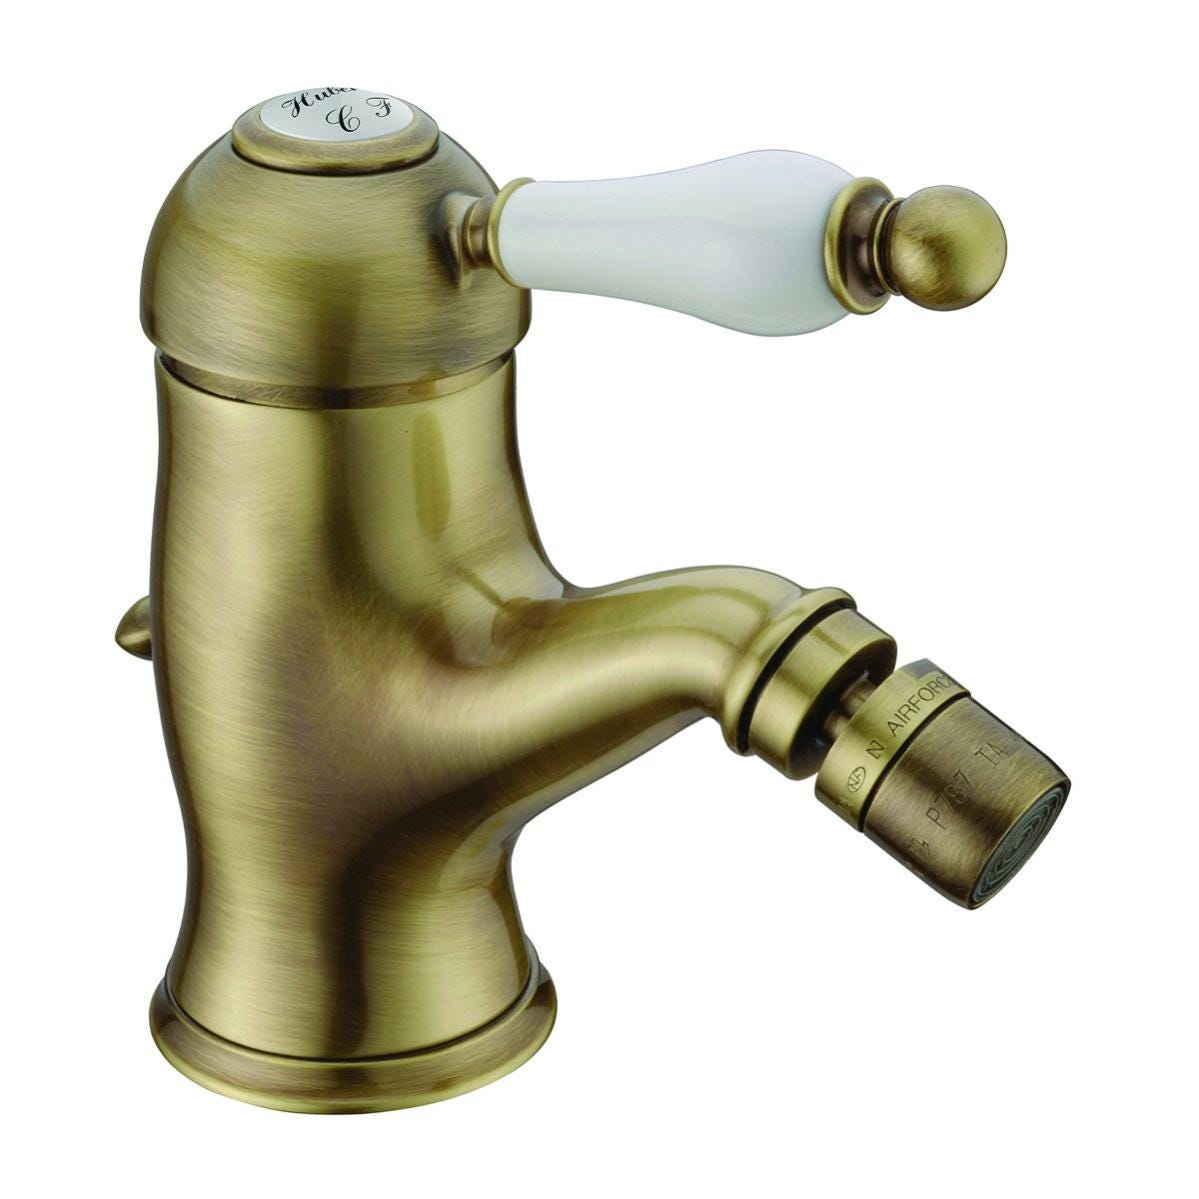 Essebagno 9023641 Full rubinetto per bidet oro spazzolato 